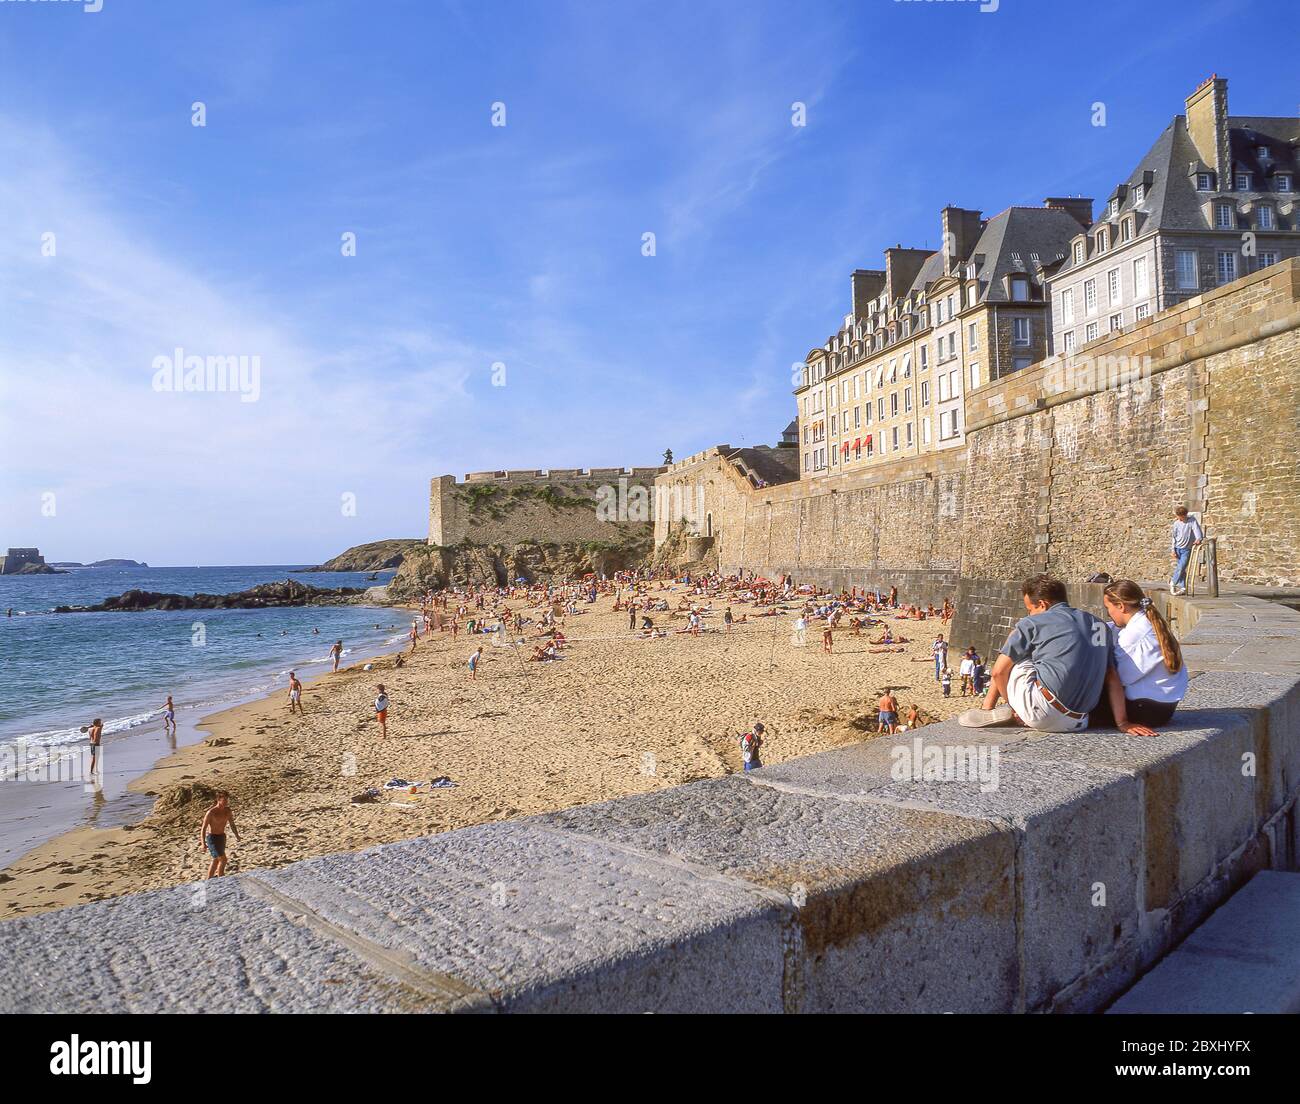 Les murs de la ville et de la plage, Saint-Malo, Ille-et-Vilaine, Bretagne, France Banque D'Images